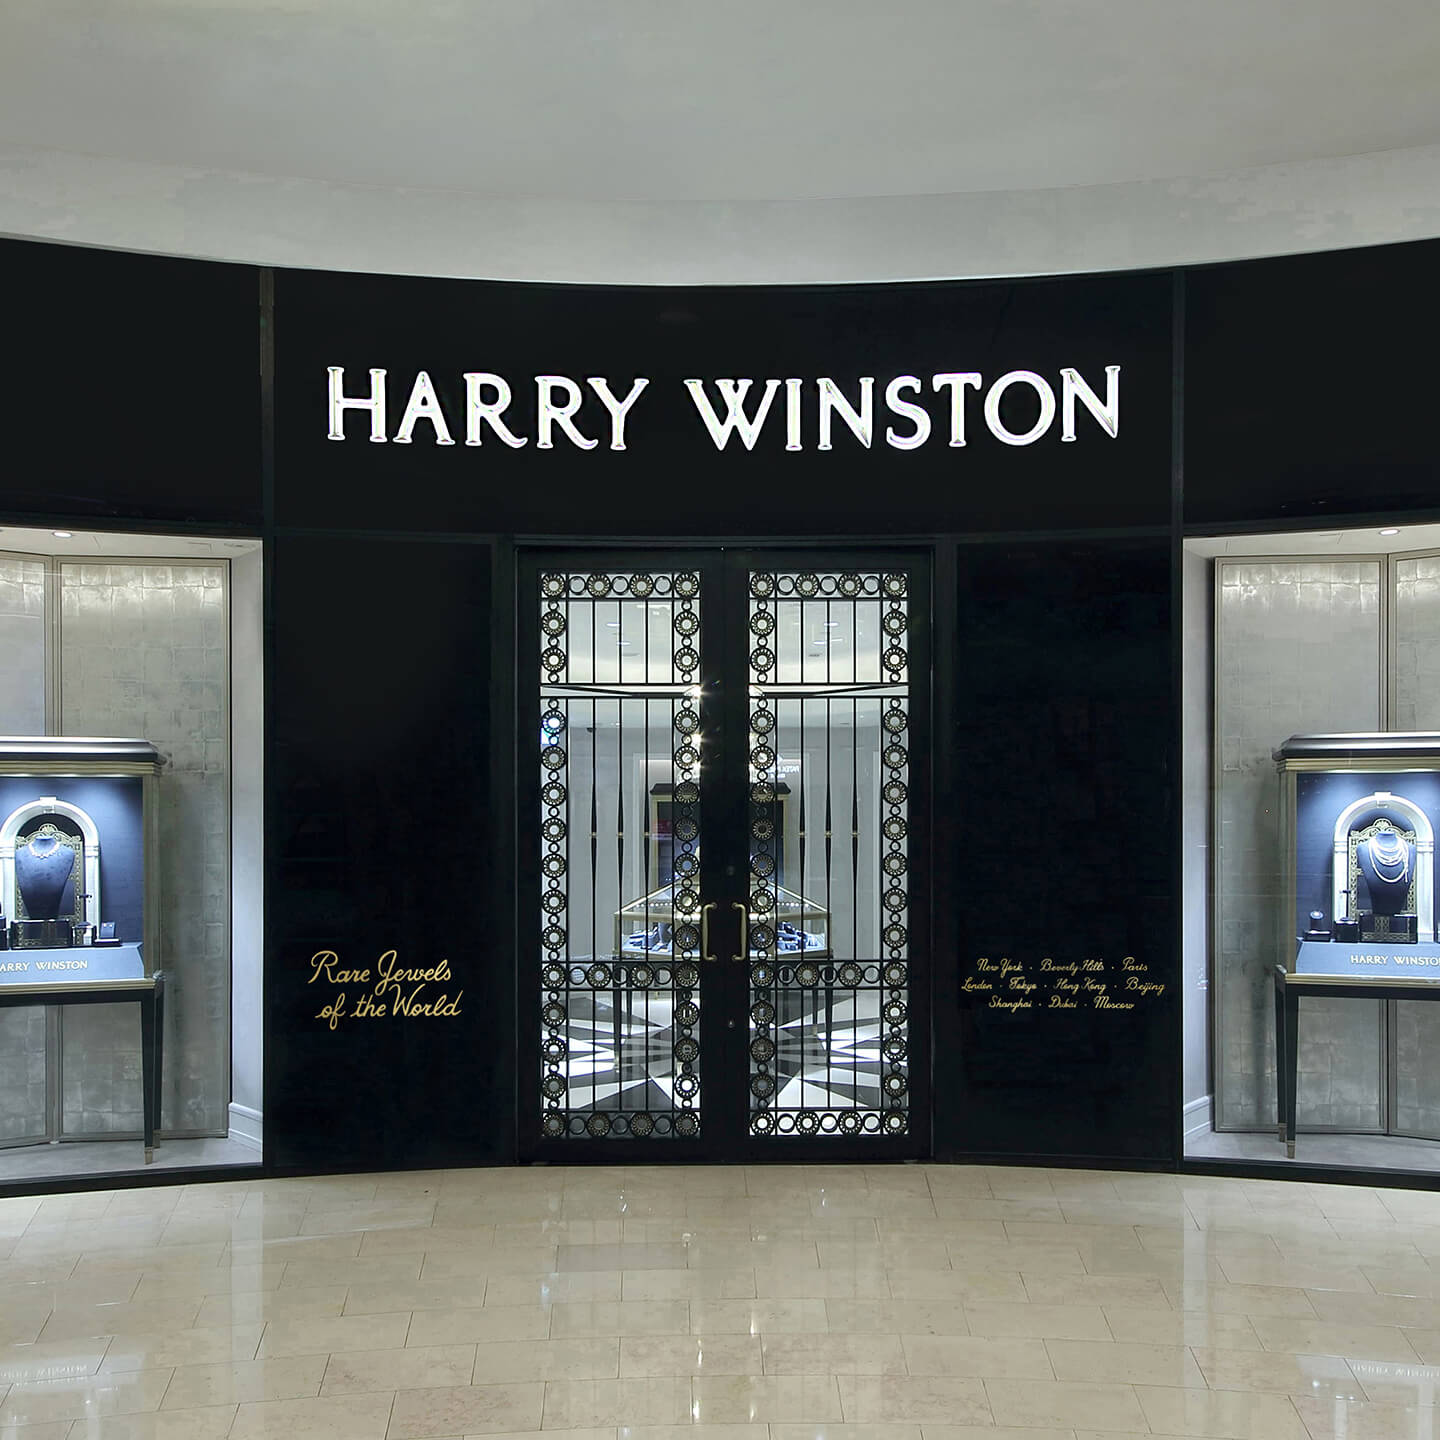 Façade of the Harry Winston Taipei 101 Salon